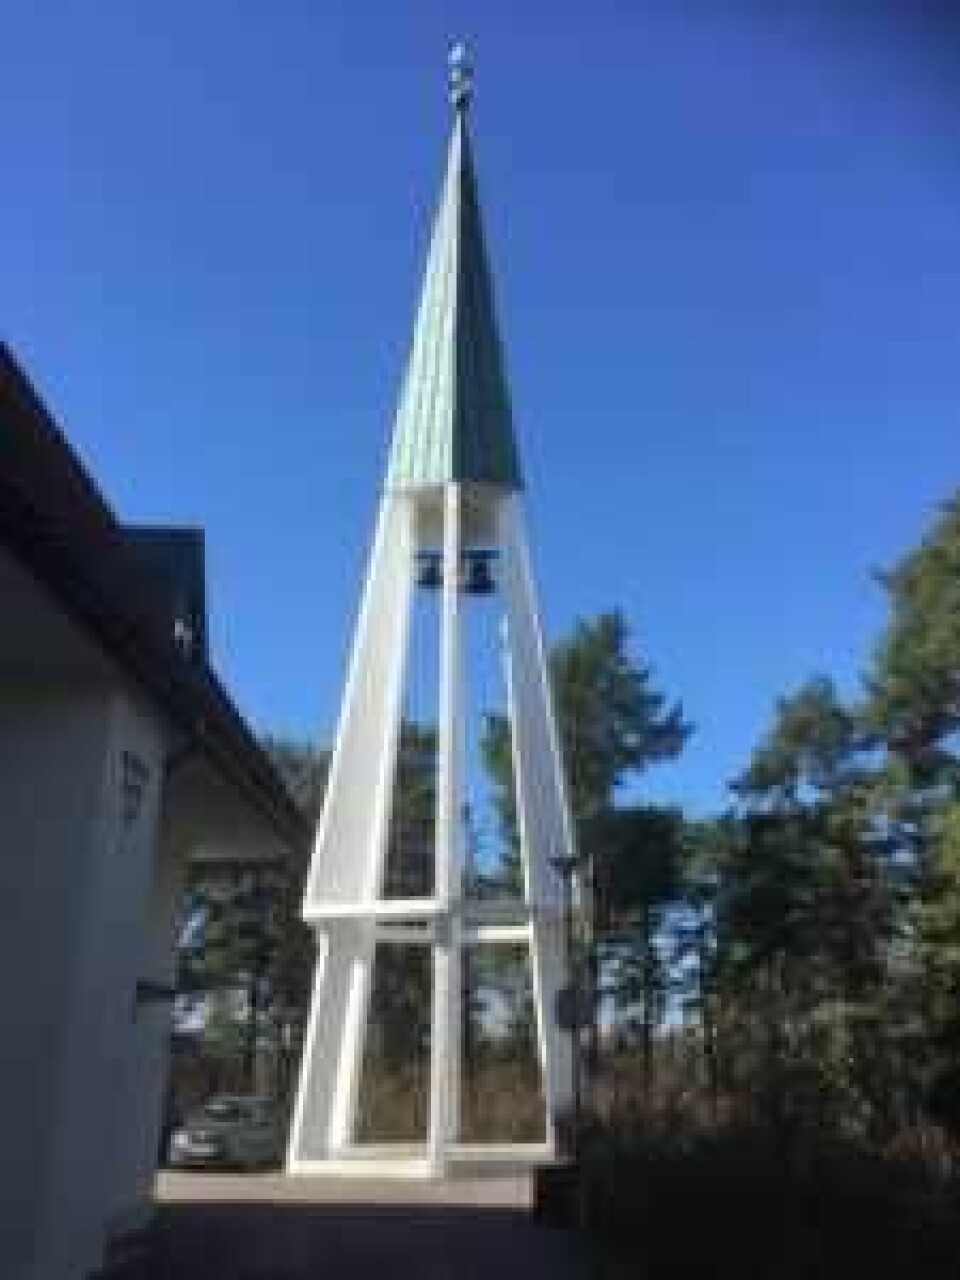 Jeg tok turen til Bygdøy kirke fordi kirketårnet så innbydende, lykkelig og morsomt ut. Foto: Kjersti Opstad